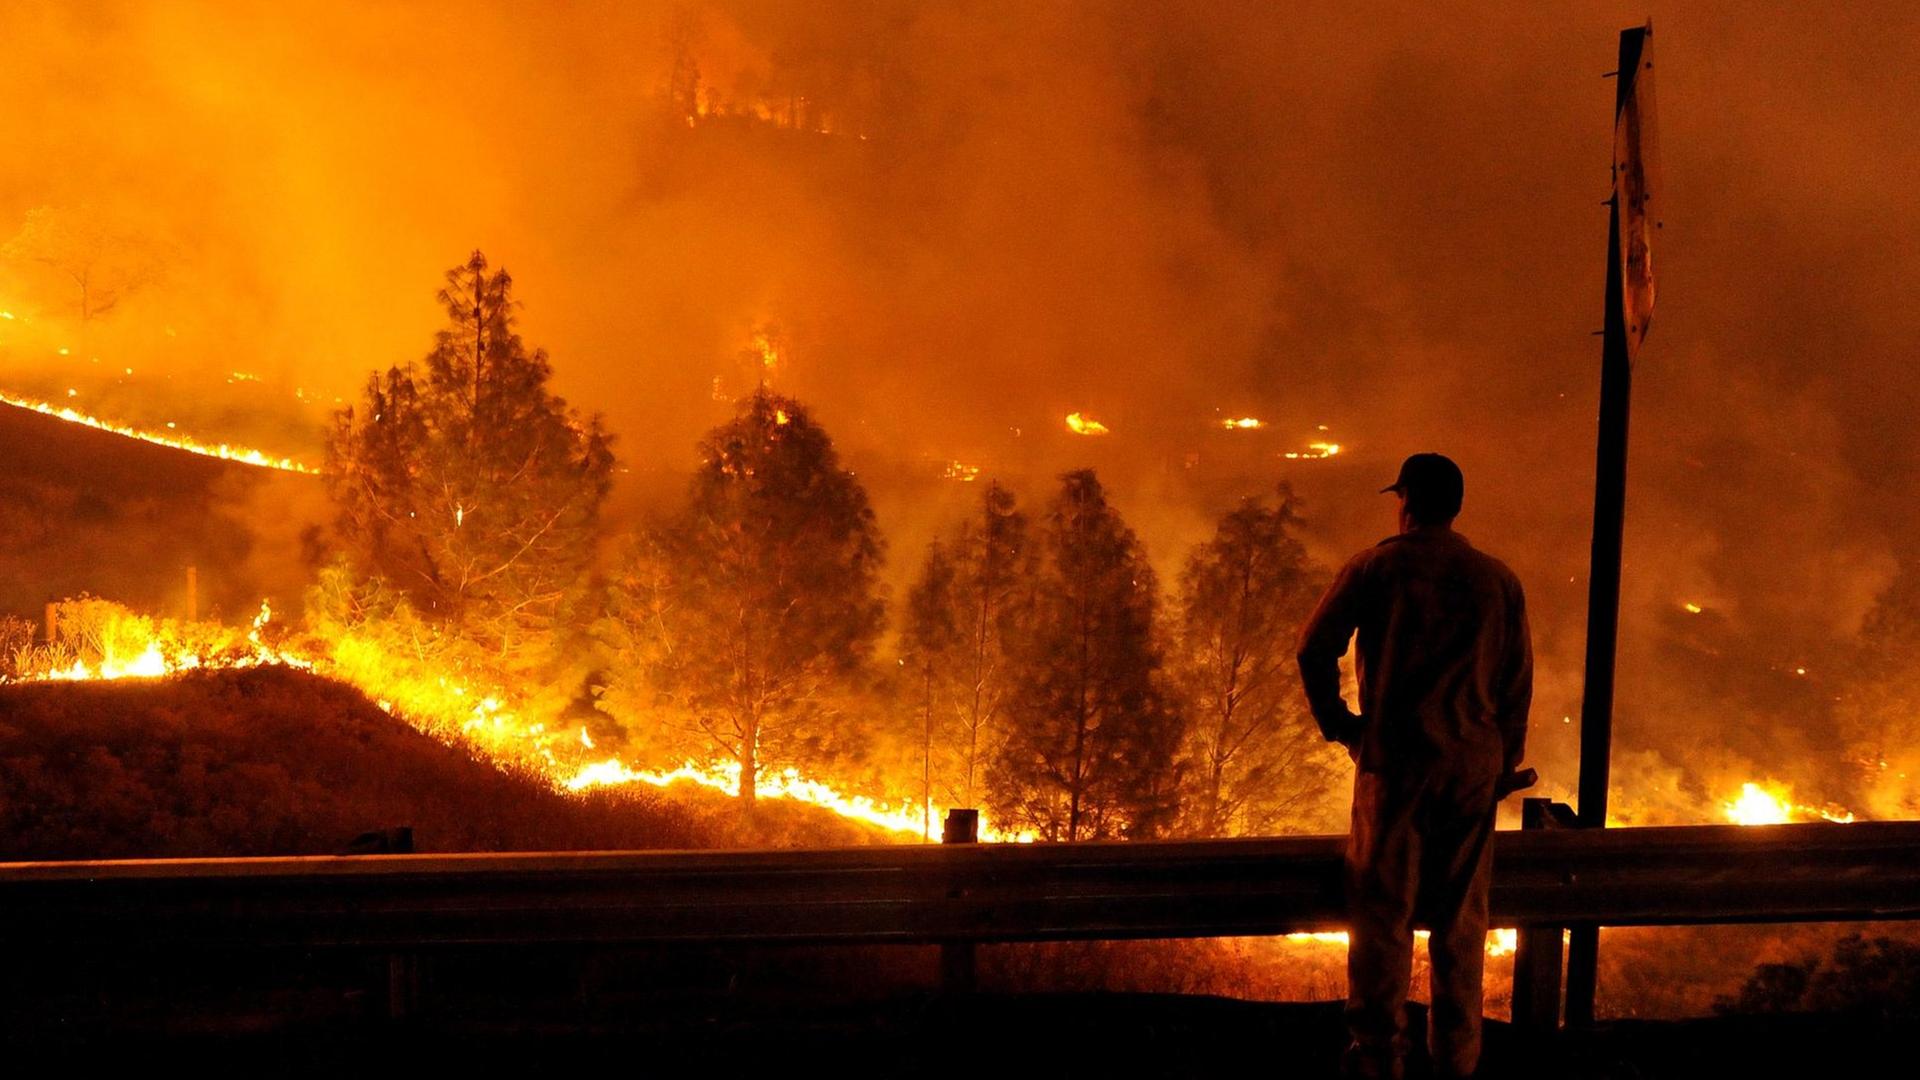 Ein Feuerwehrmann steht vor einem Waldbrand. Rauch zieht durch die rotschimmernde Luft.